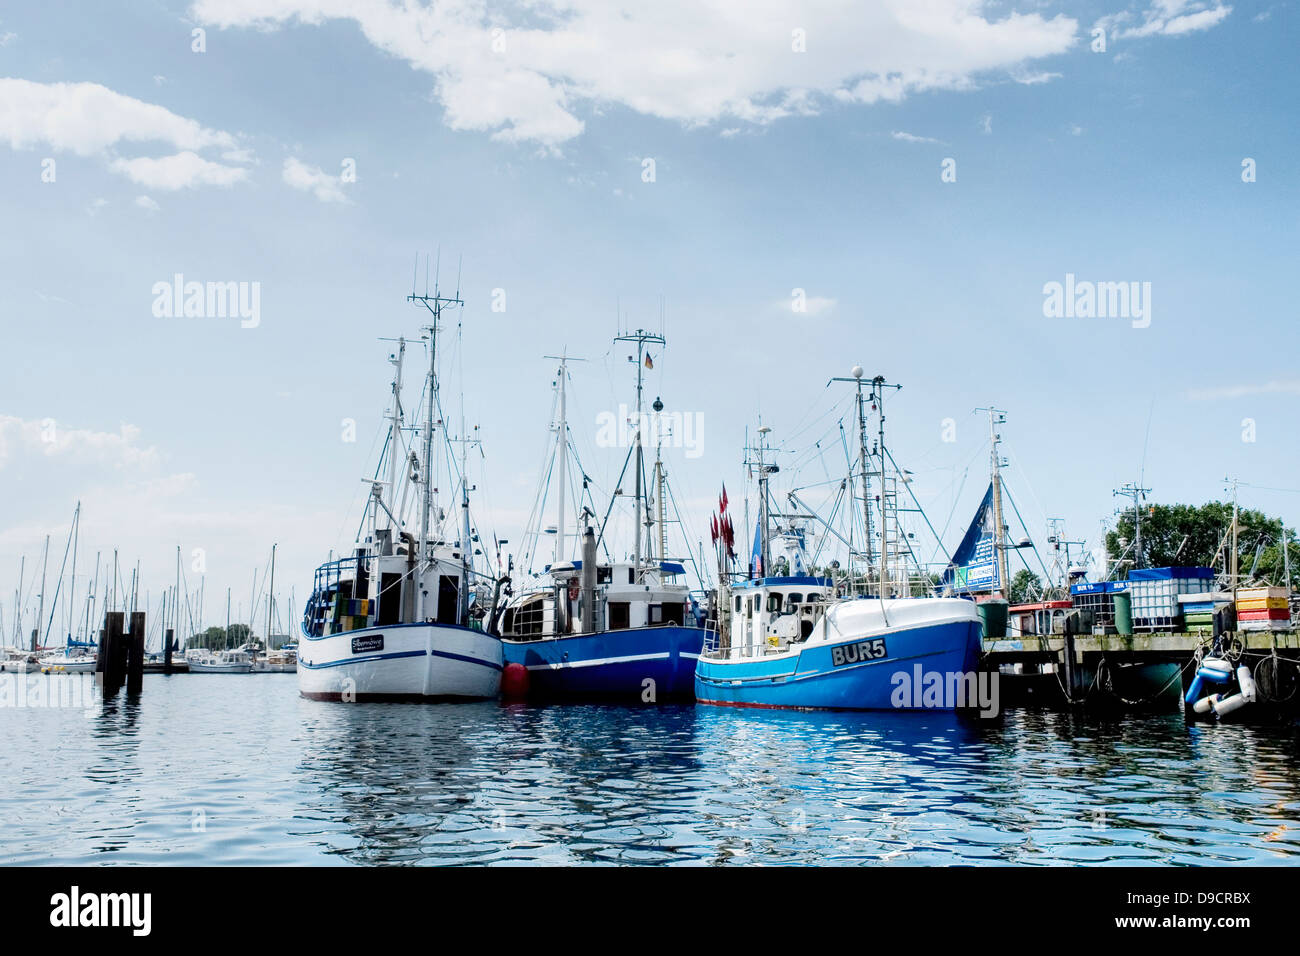 La pesca de arrastre en el puerto. Foto de stock